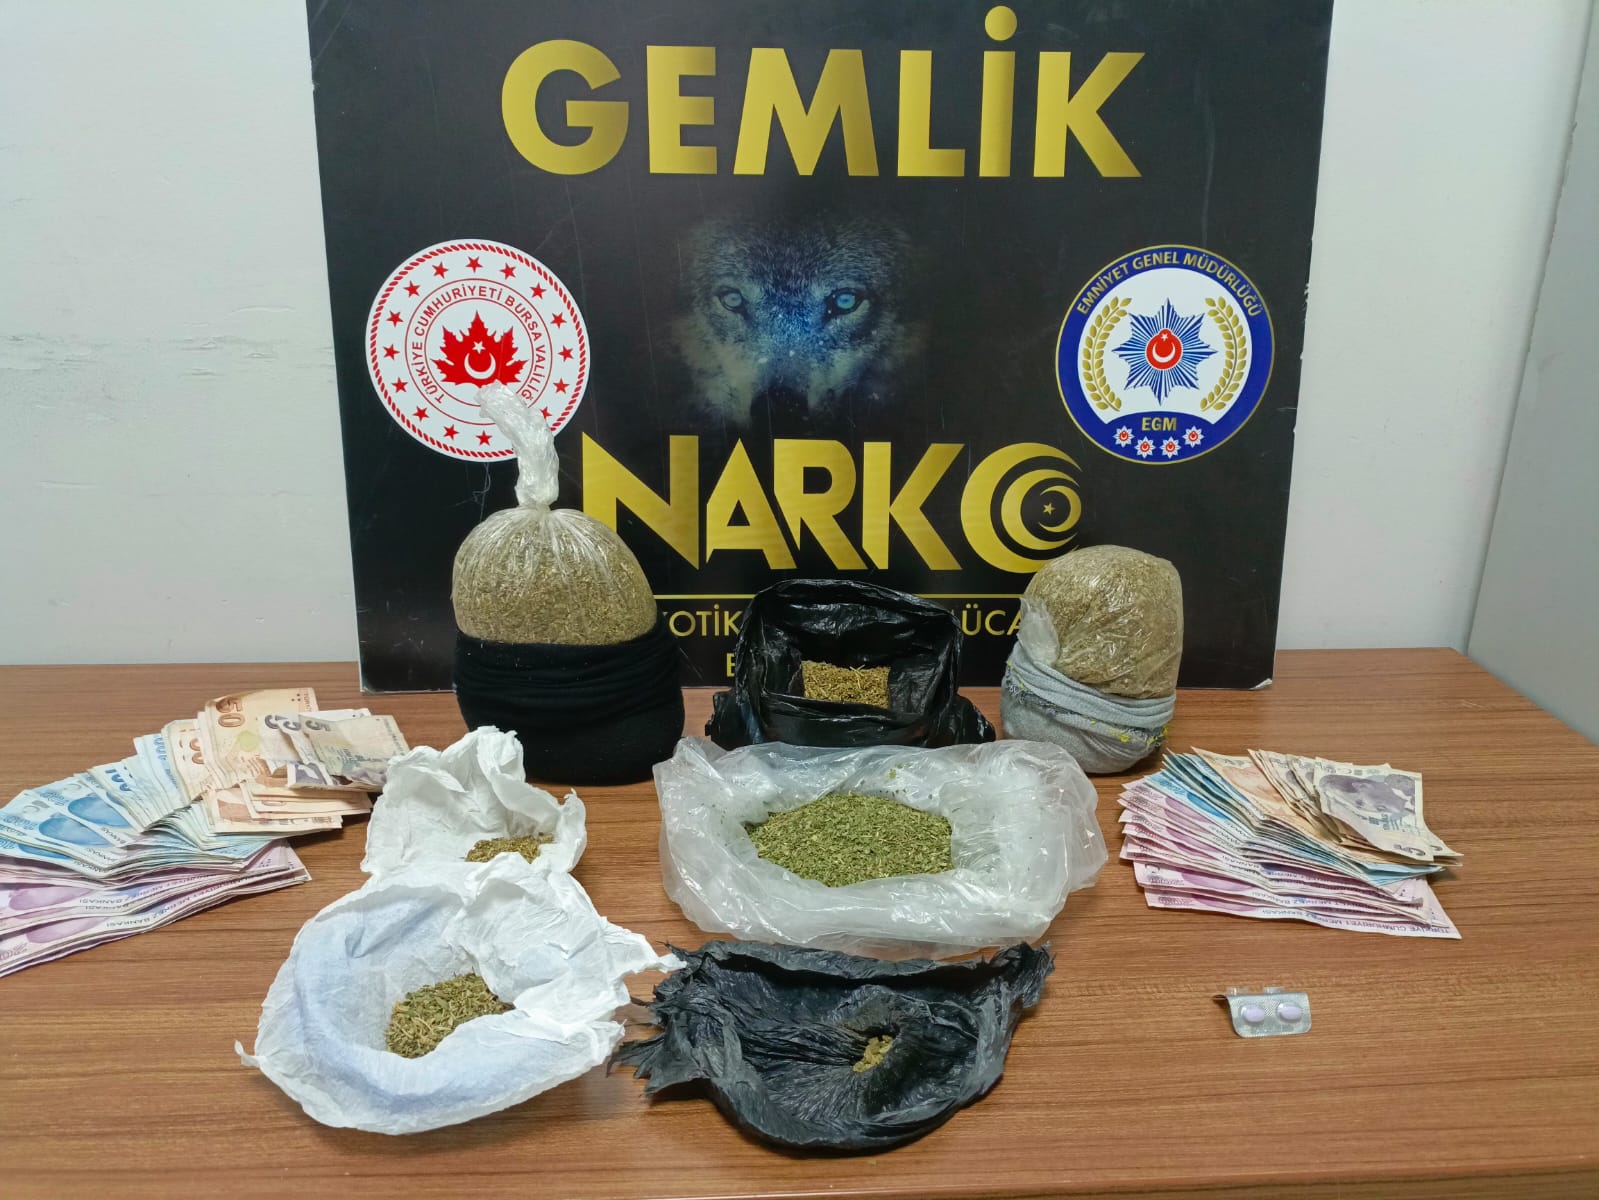 Bursa’da gerçekleştirilen narkotik operasyonunda, karı-koca olarak bilinen şüpheliler gözaltına alınarak tutuklandı.